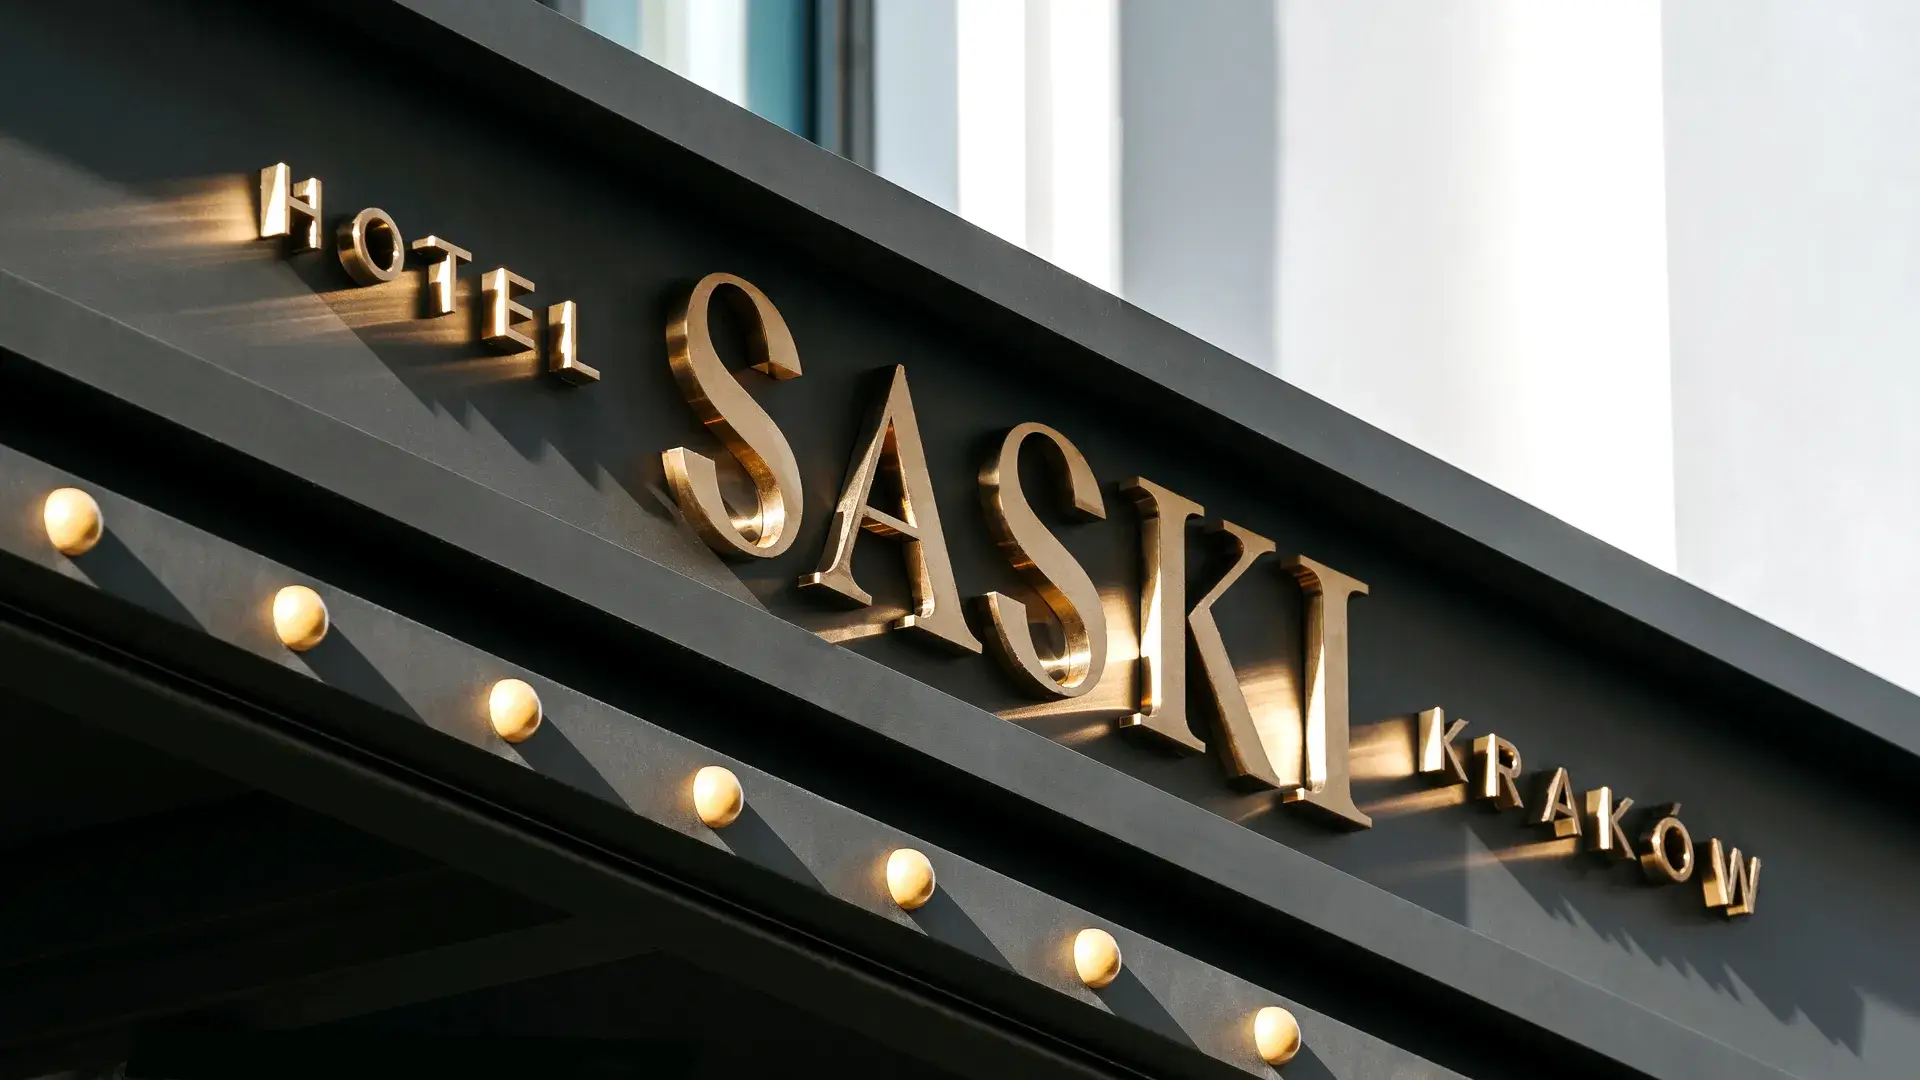 Lettere in acciaio inox spazzolato oro all'esterno dell'edificio dell'hotel Saski